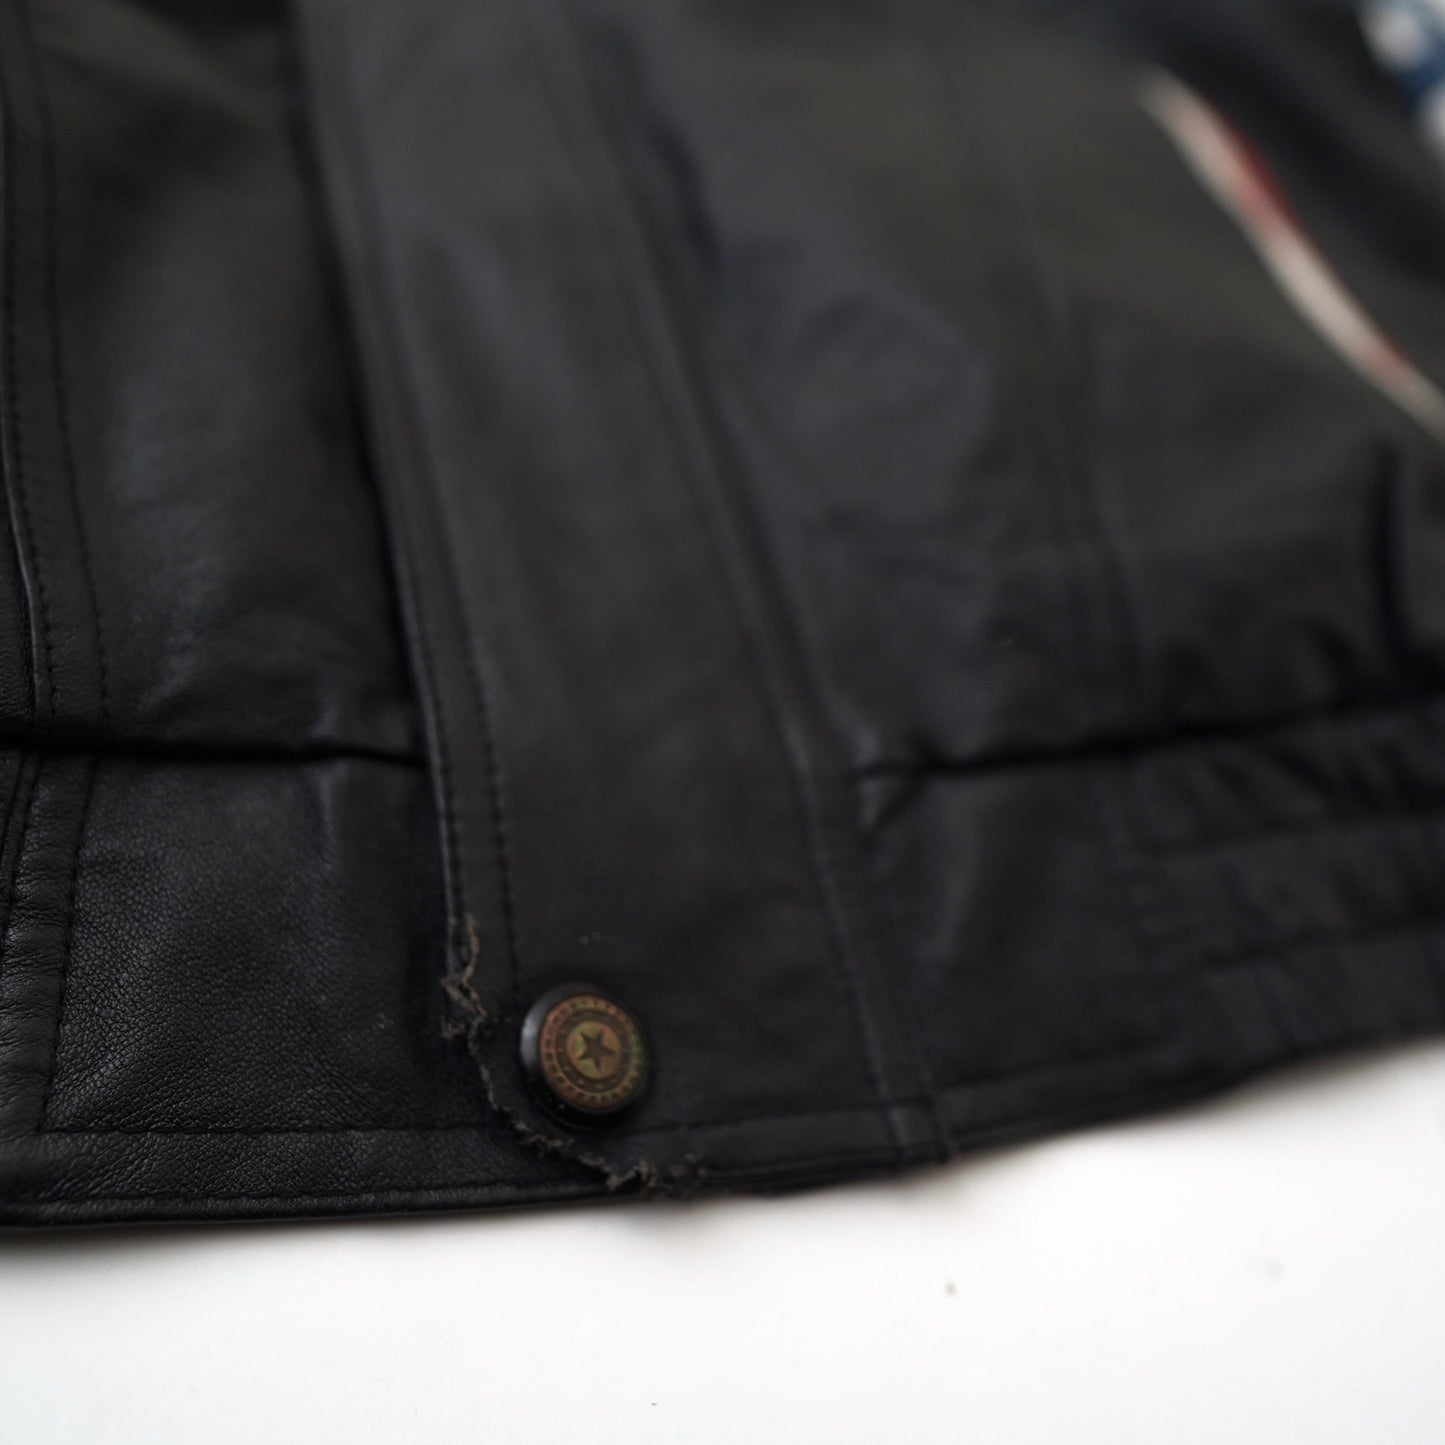 90s leather jacket